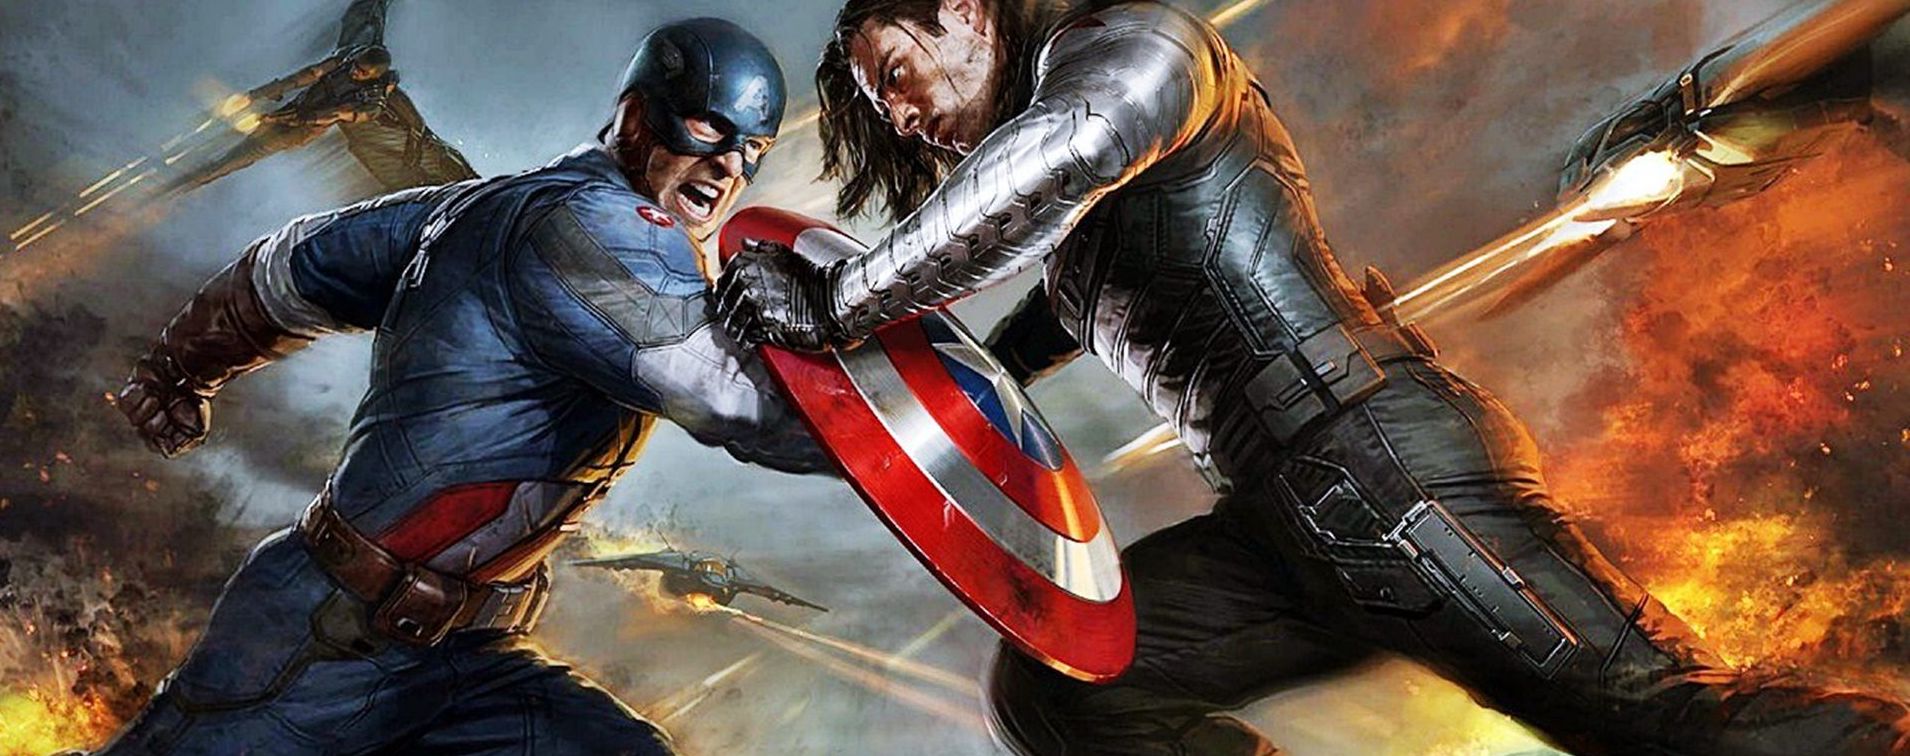 Captain America contre le soldat de l'hiver